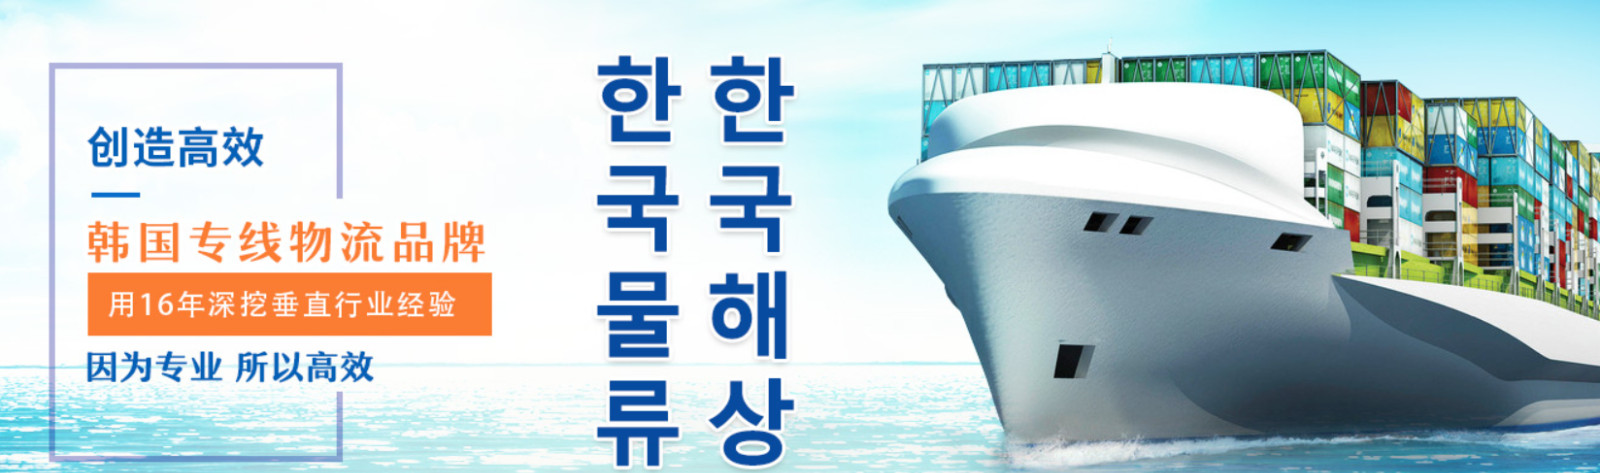 韩亚航空公司 韩亚航空株式会社 OZ航空 韩亚航空 Asiana Airlines Inc 